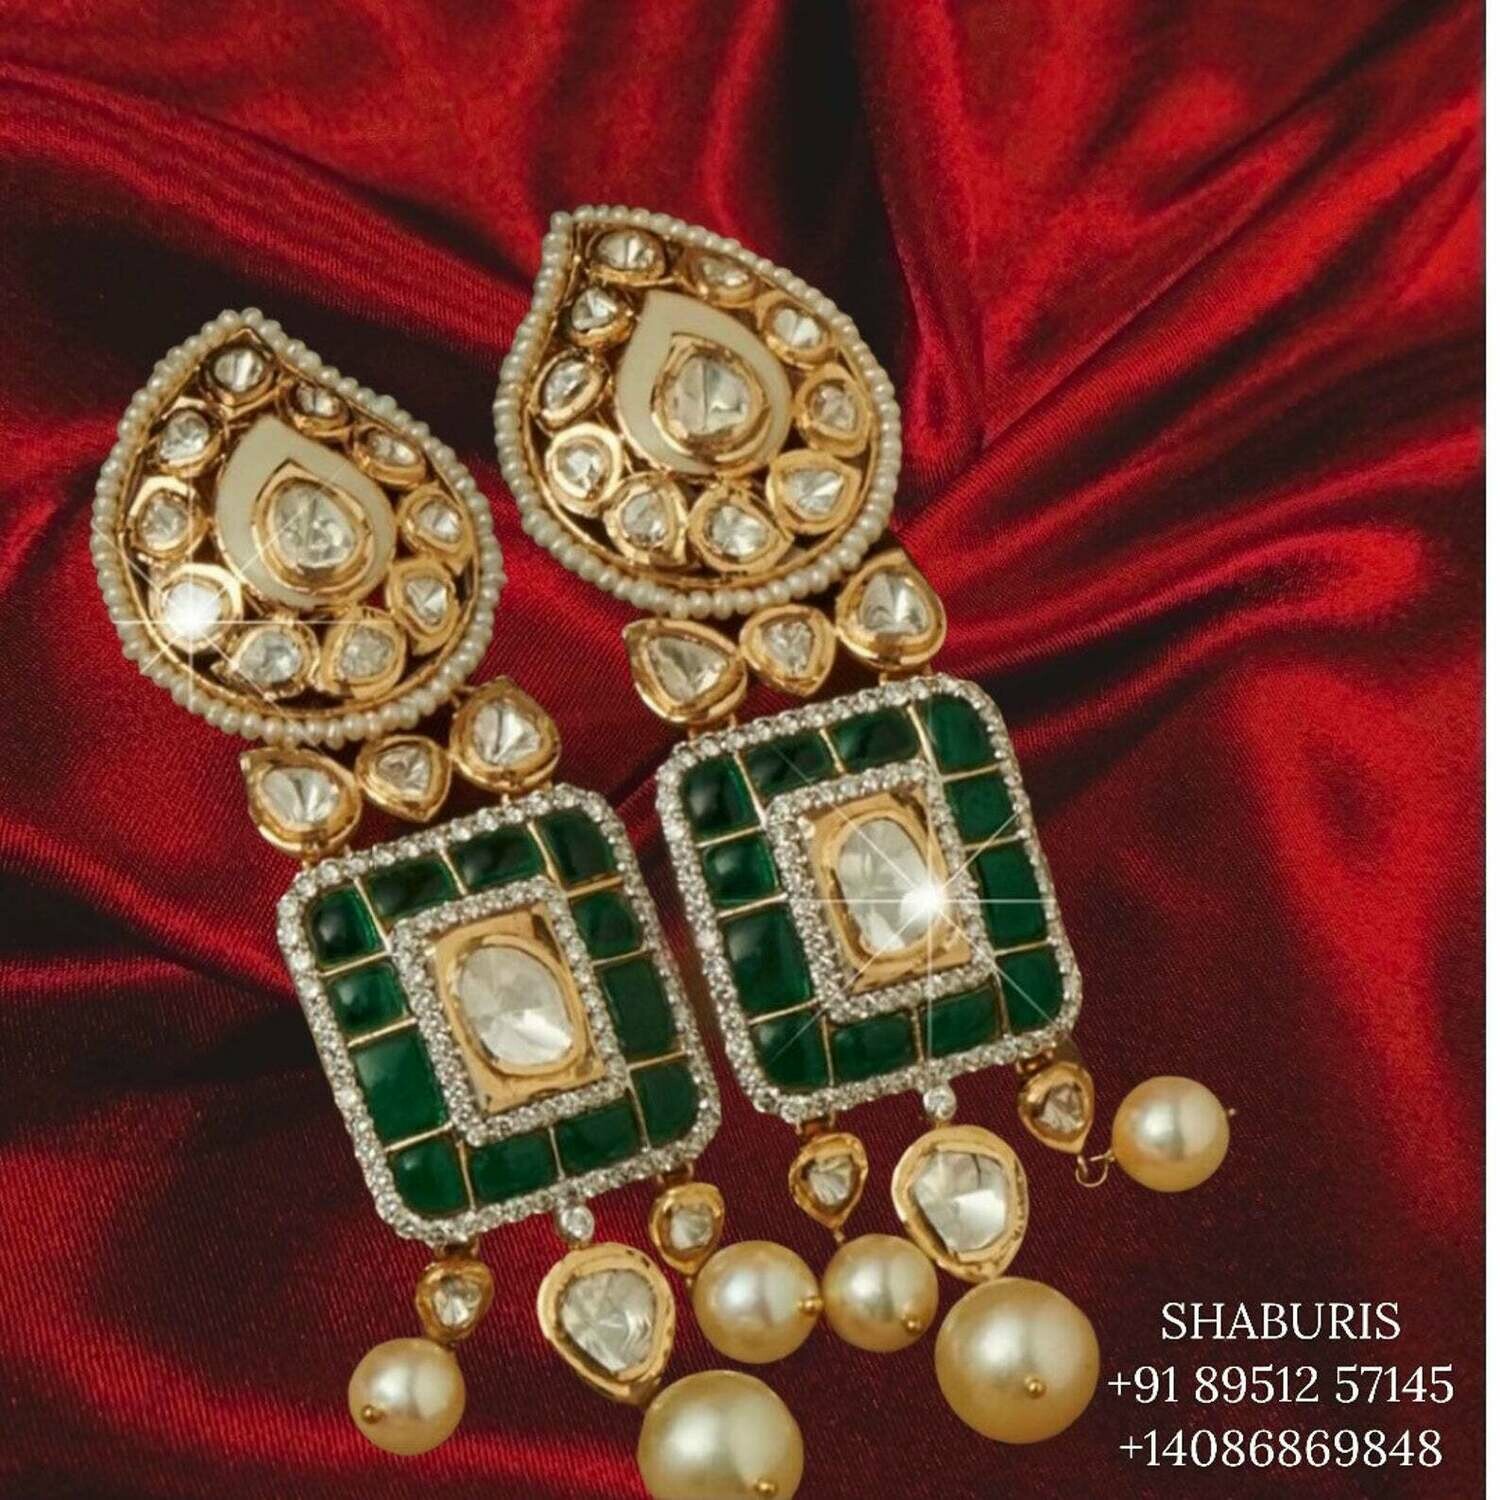 Diamond Jhumka,diamond chandbali,diamond earrings indian,polki diamond jhumka,swarovski diamond jhumka,chandbali earrings,silver